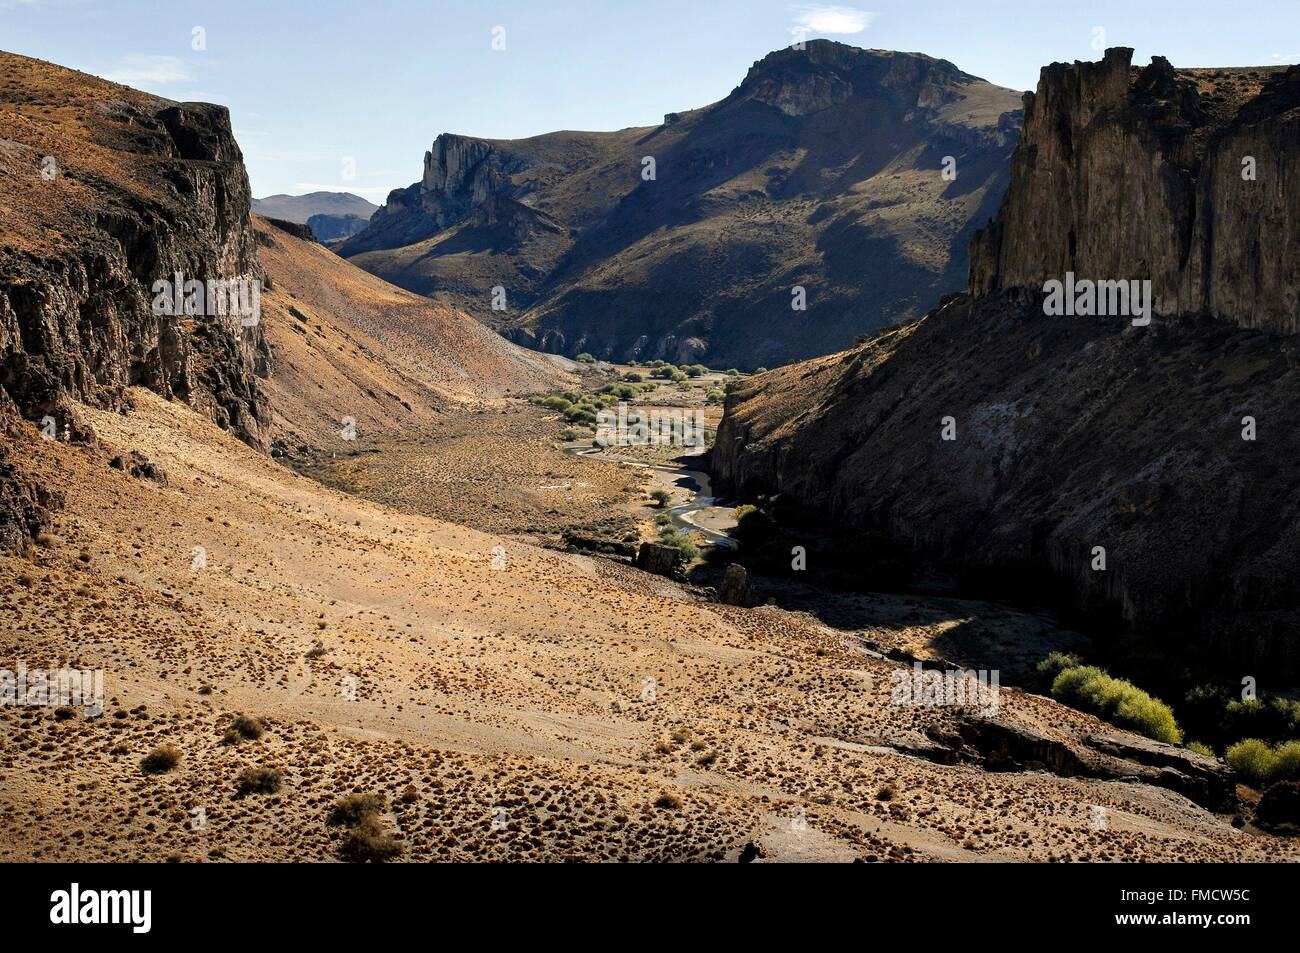 Argentina, Patagonia, provincia de Santa Cruz, Valle del Río Pinturas, el paisaje circundante. Foto de stock